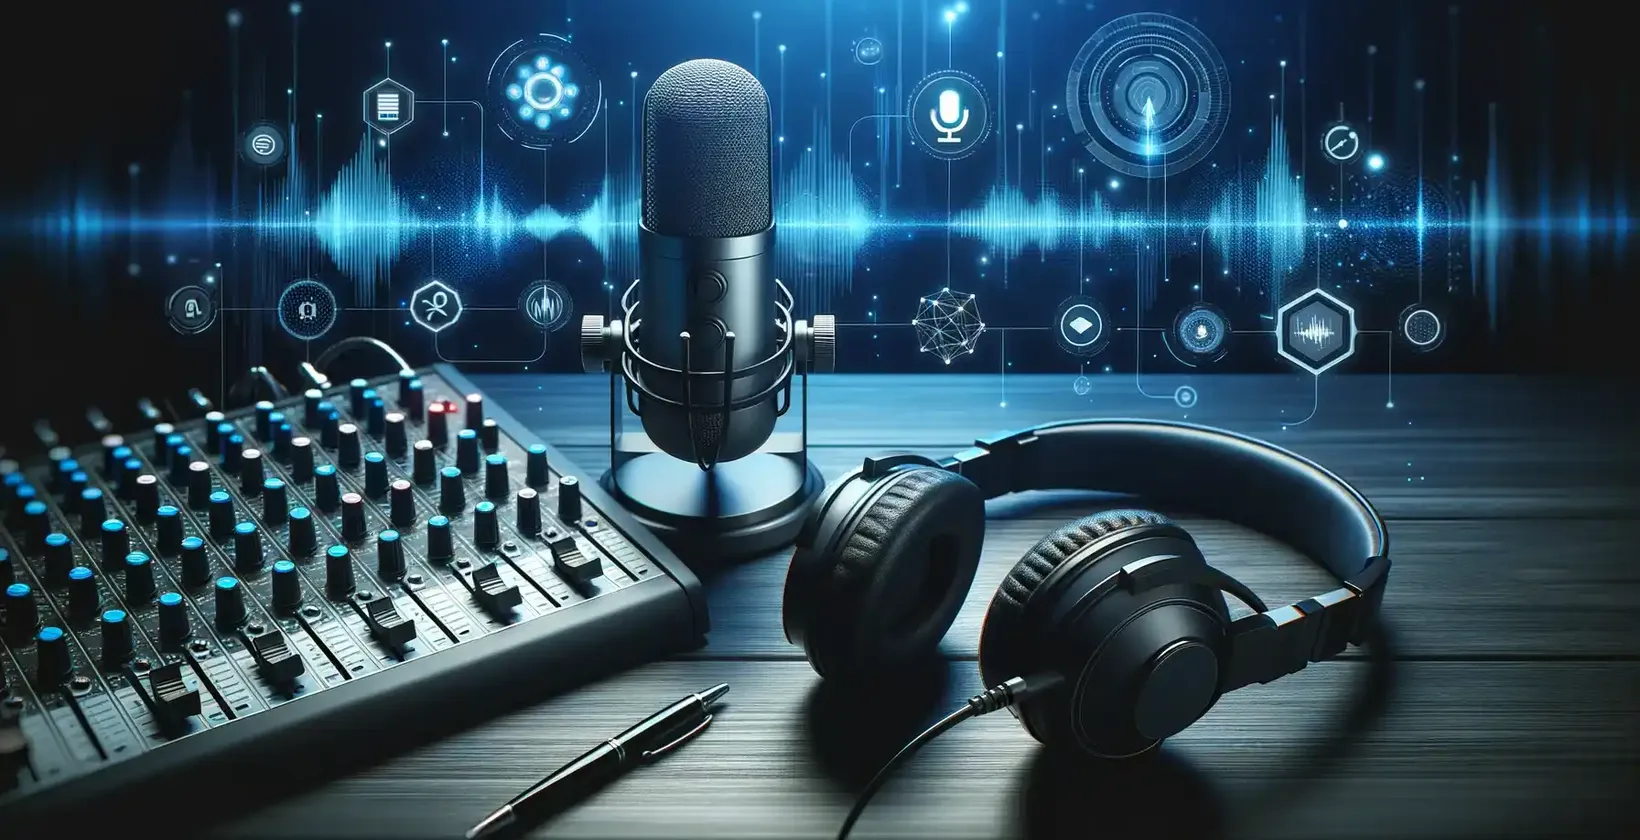 Доступність подкастів забезпечується студійним обладнанням, зокрема мікрофоном, навушниками та екраном, на якому відображаються форми звукових хвиль.